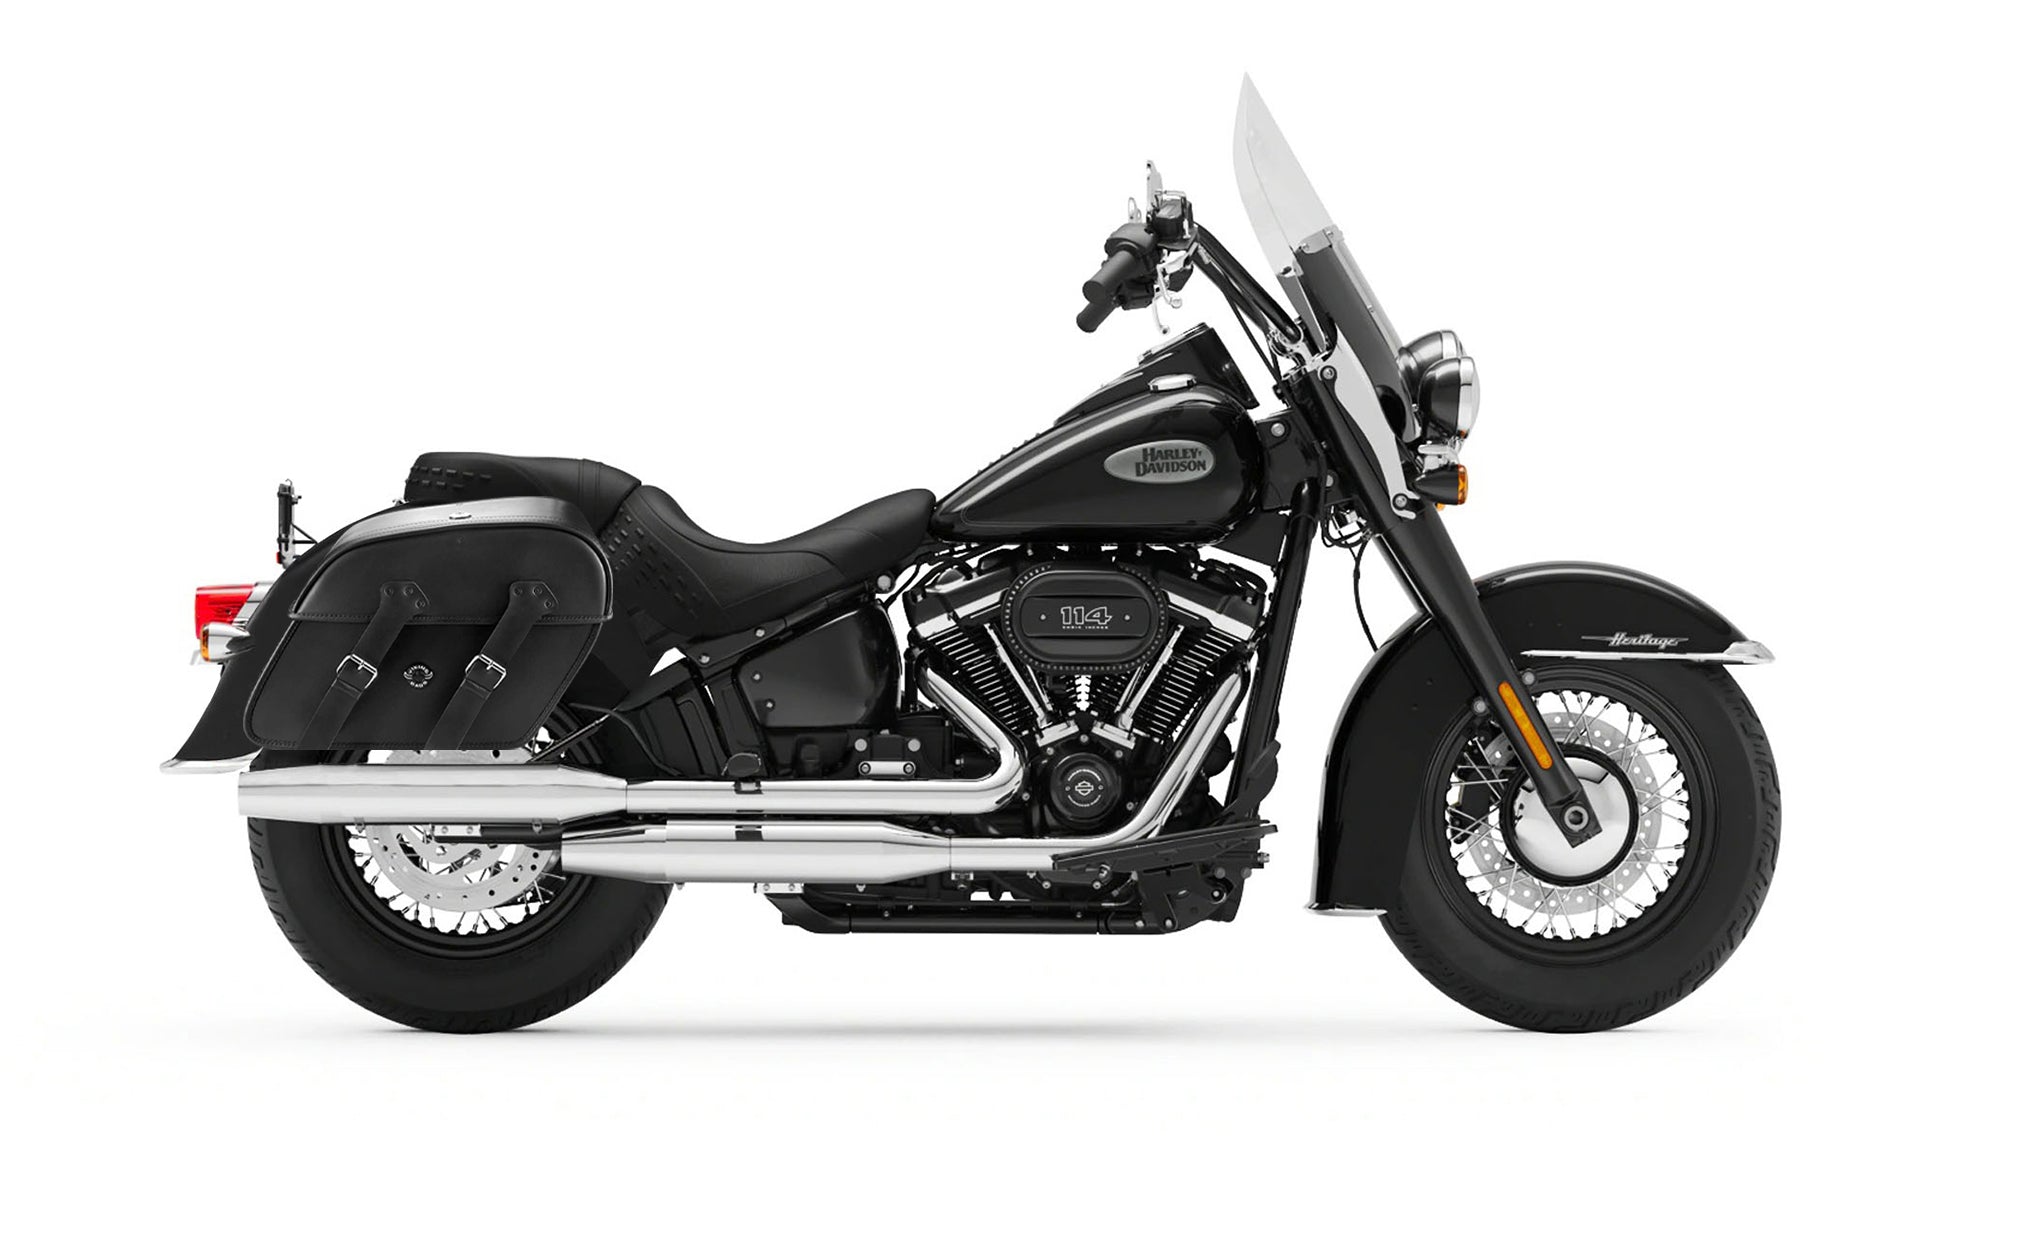 Viking Raven Large Motorcycle Leather Saddlebags For Harley Softail Heritage Flst I C Ci on Bike Photo @expand